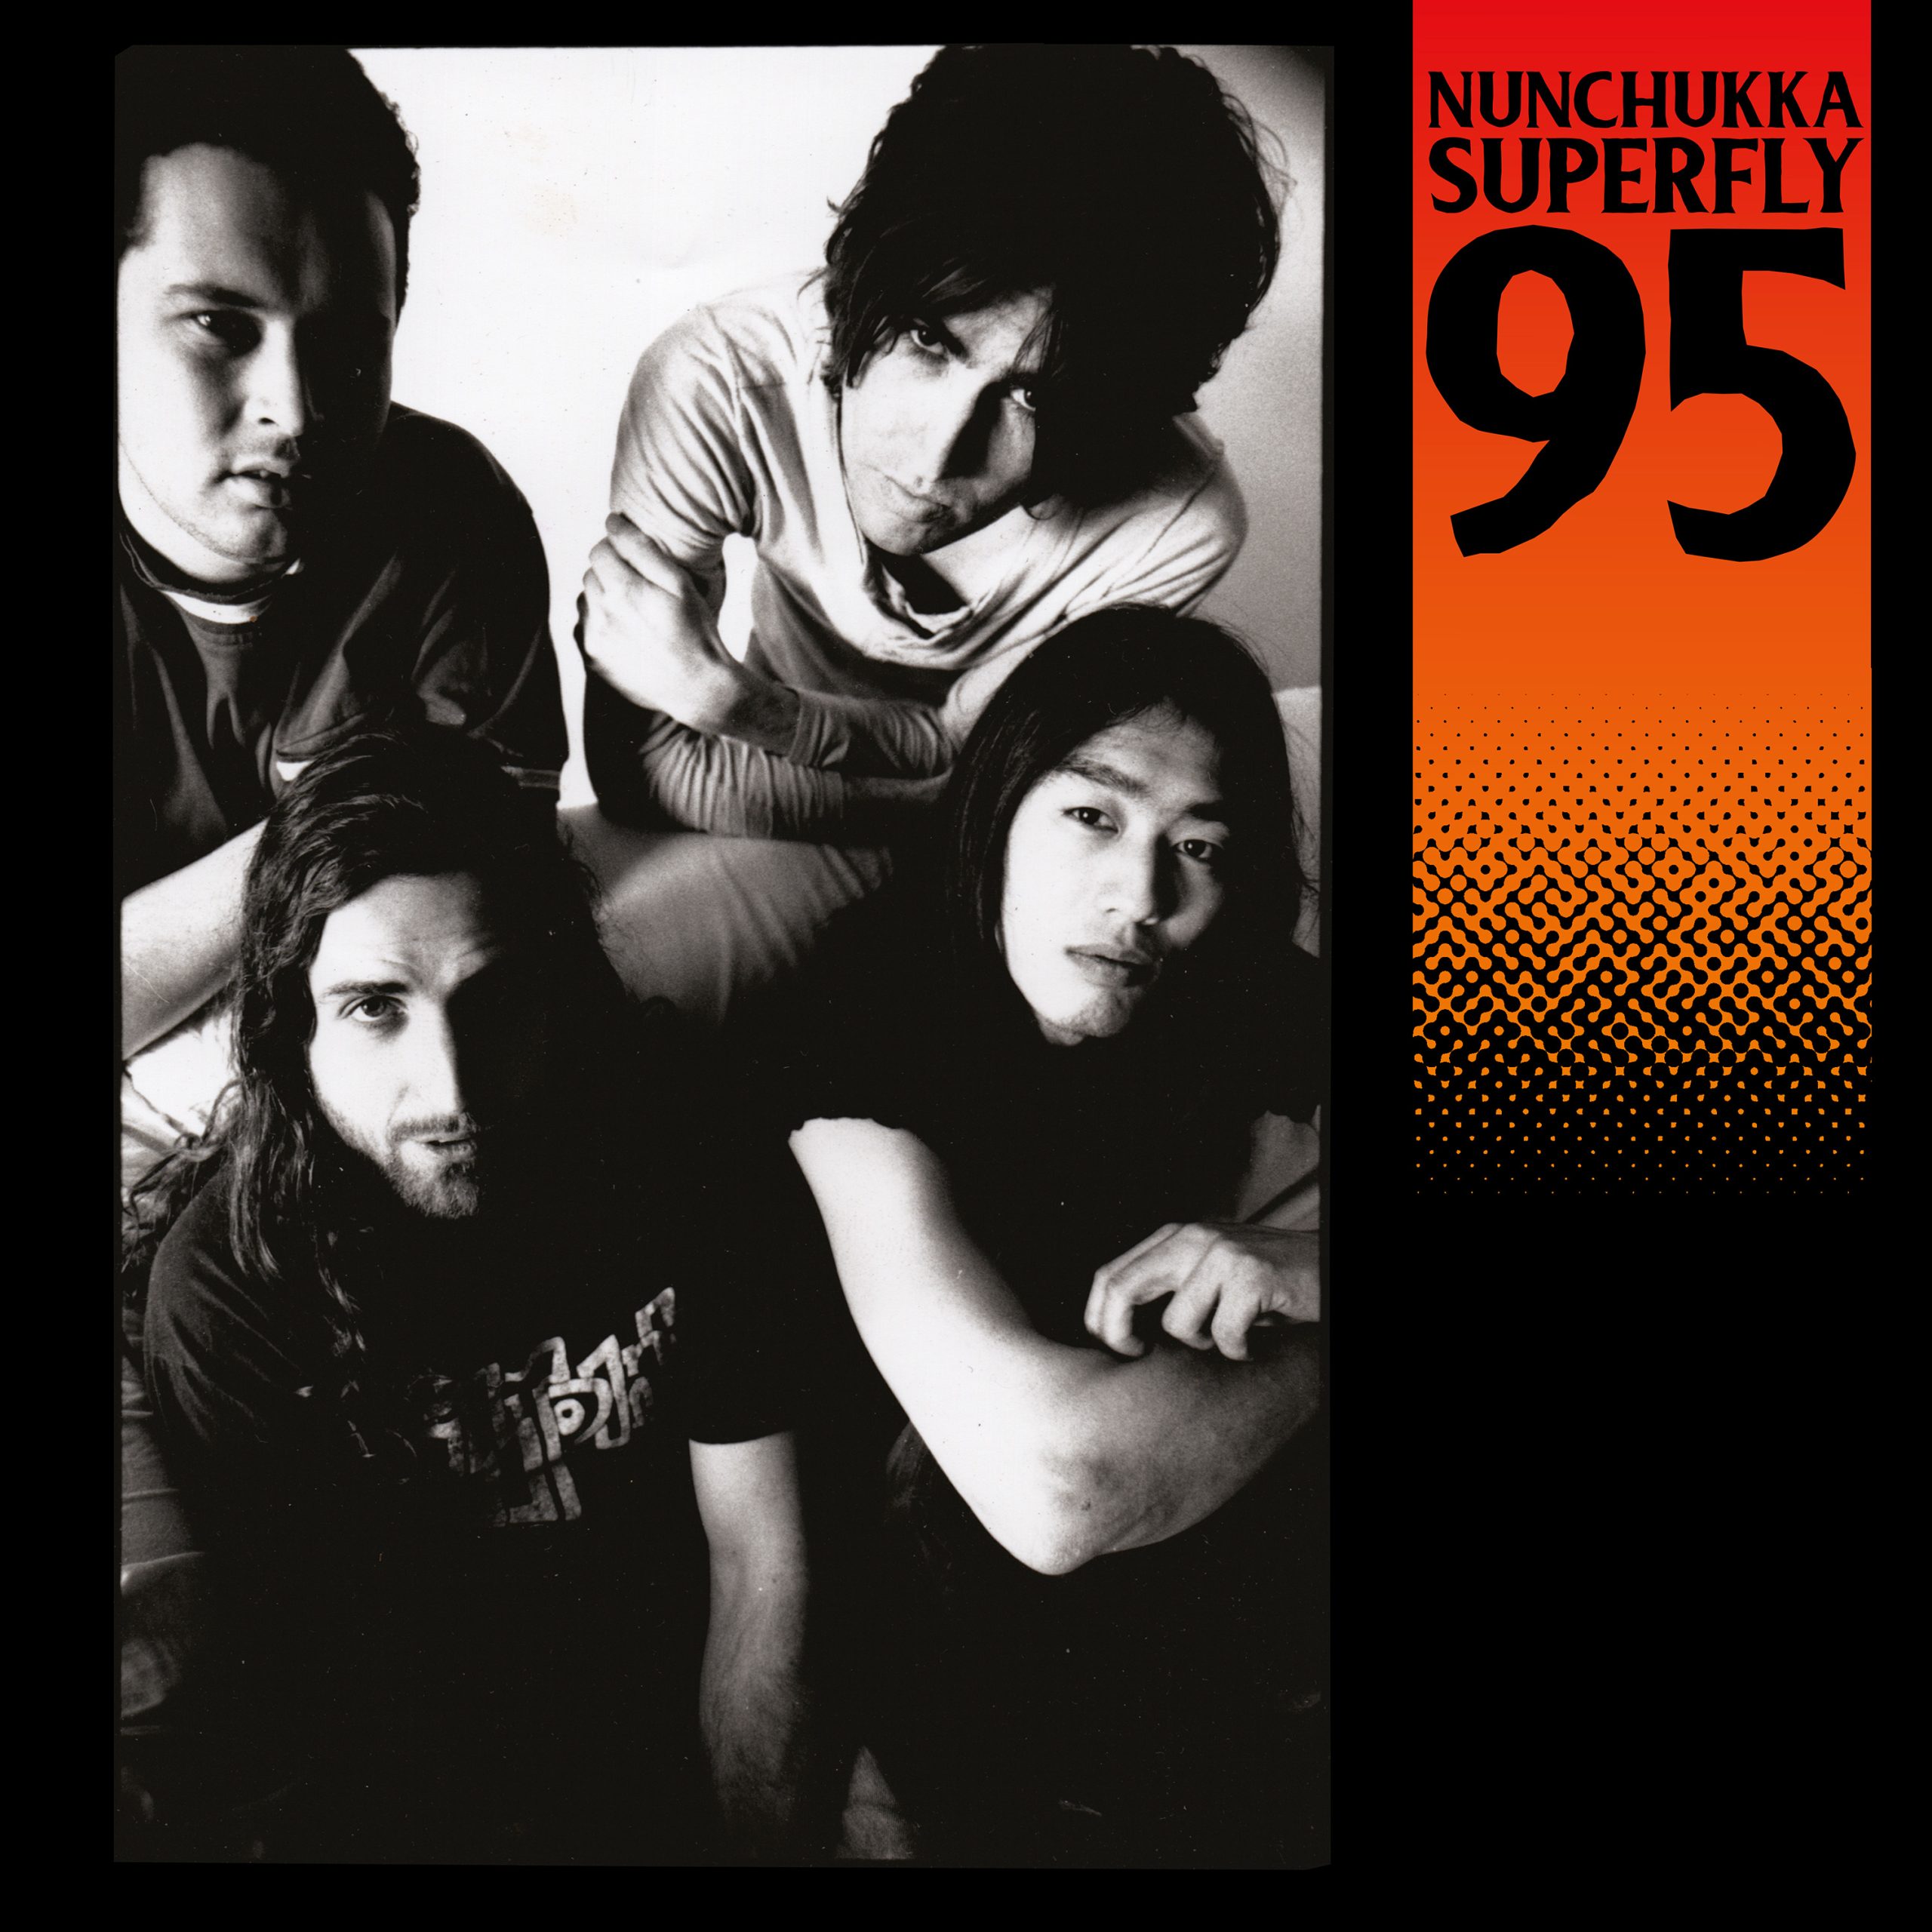 Nunchukka Superfly - Nunchukka Superfly 95